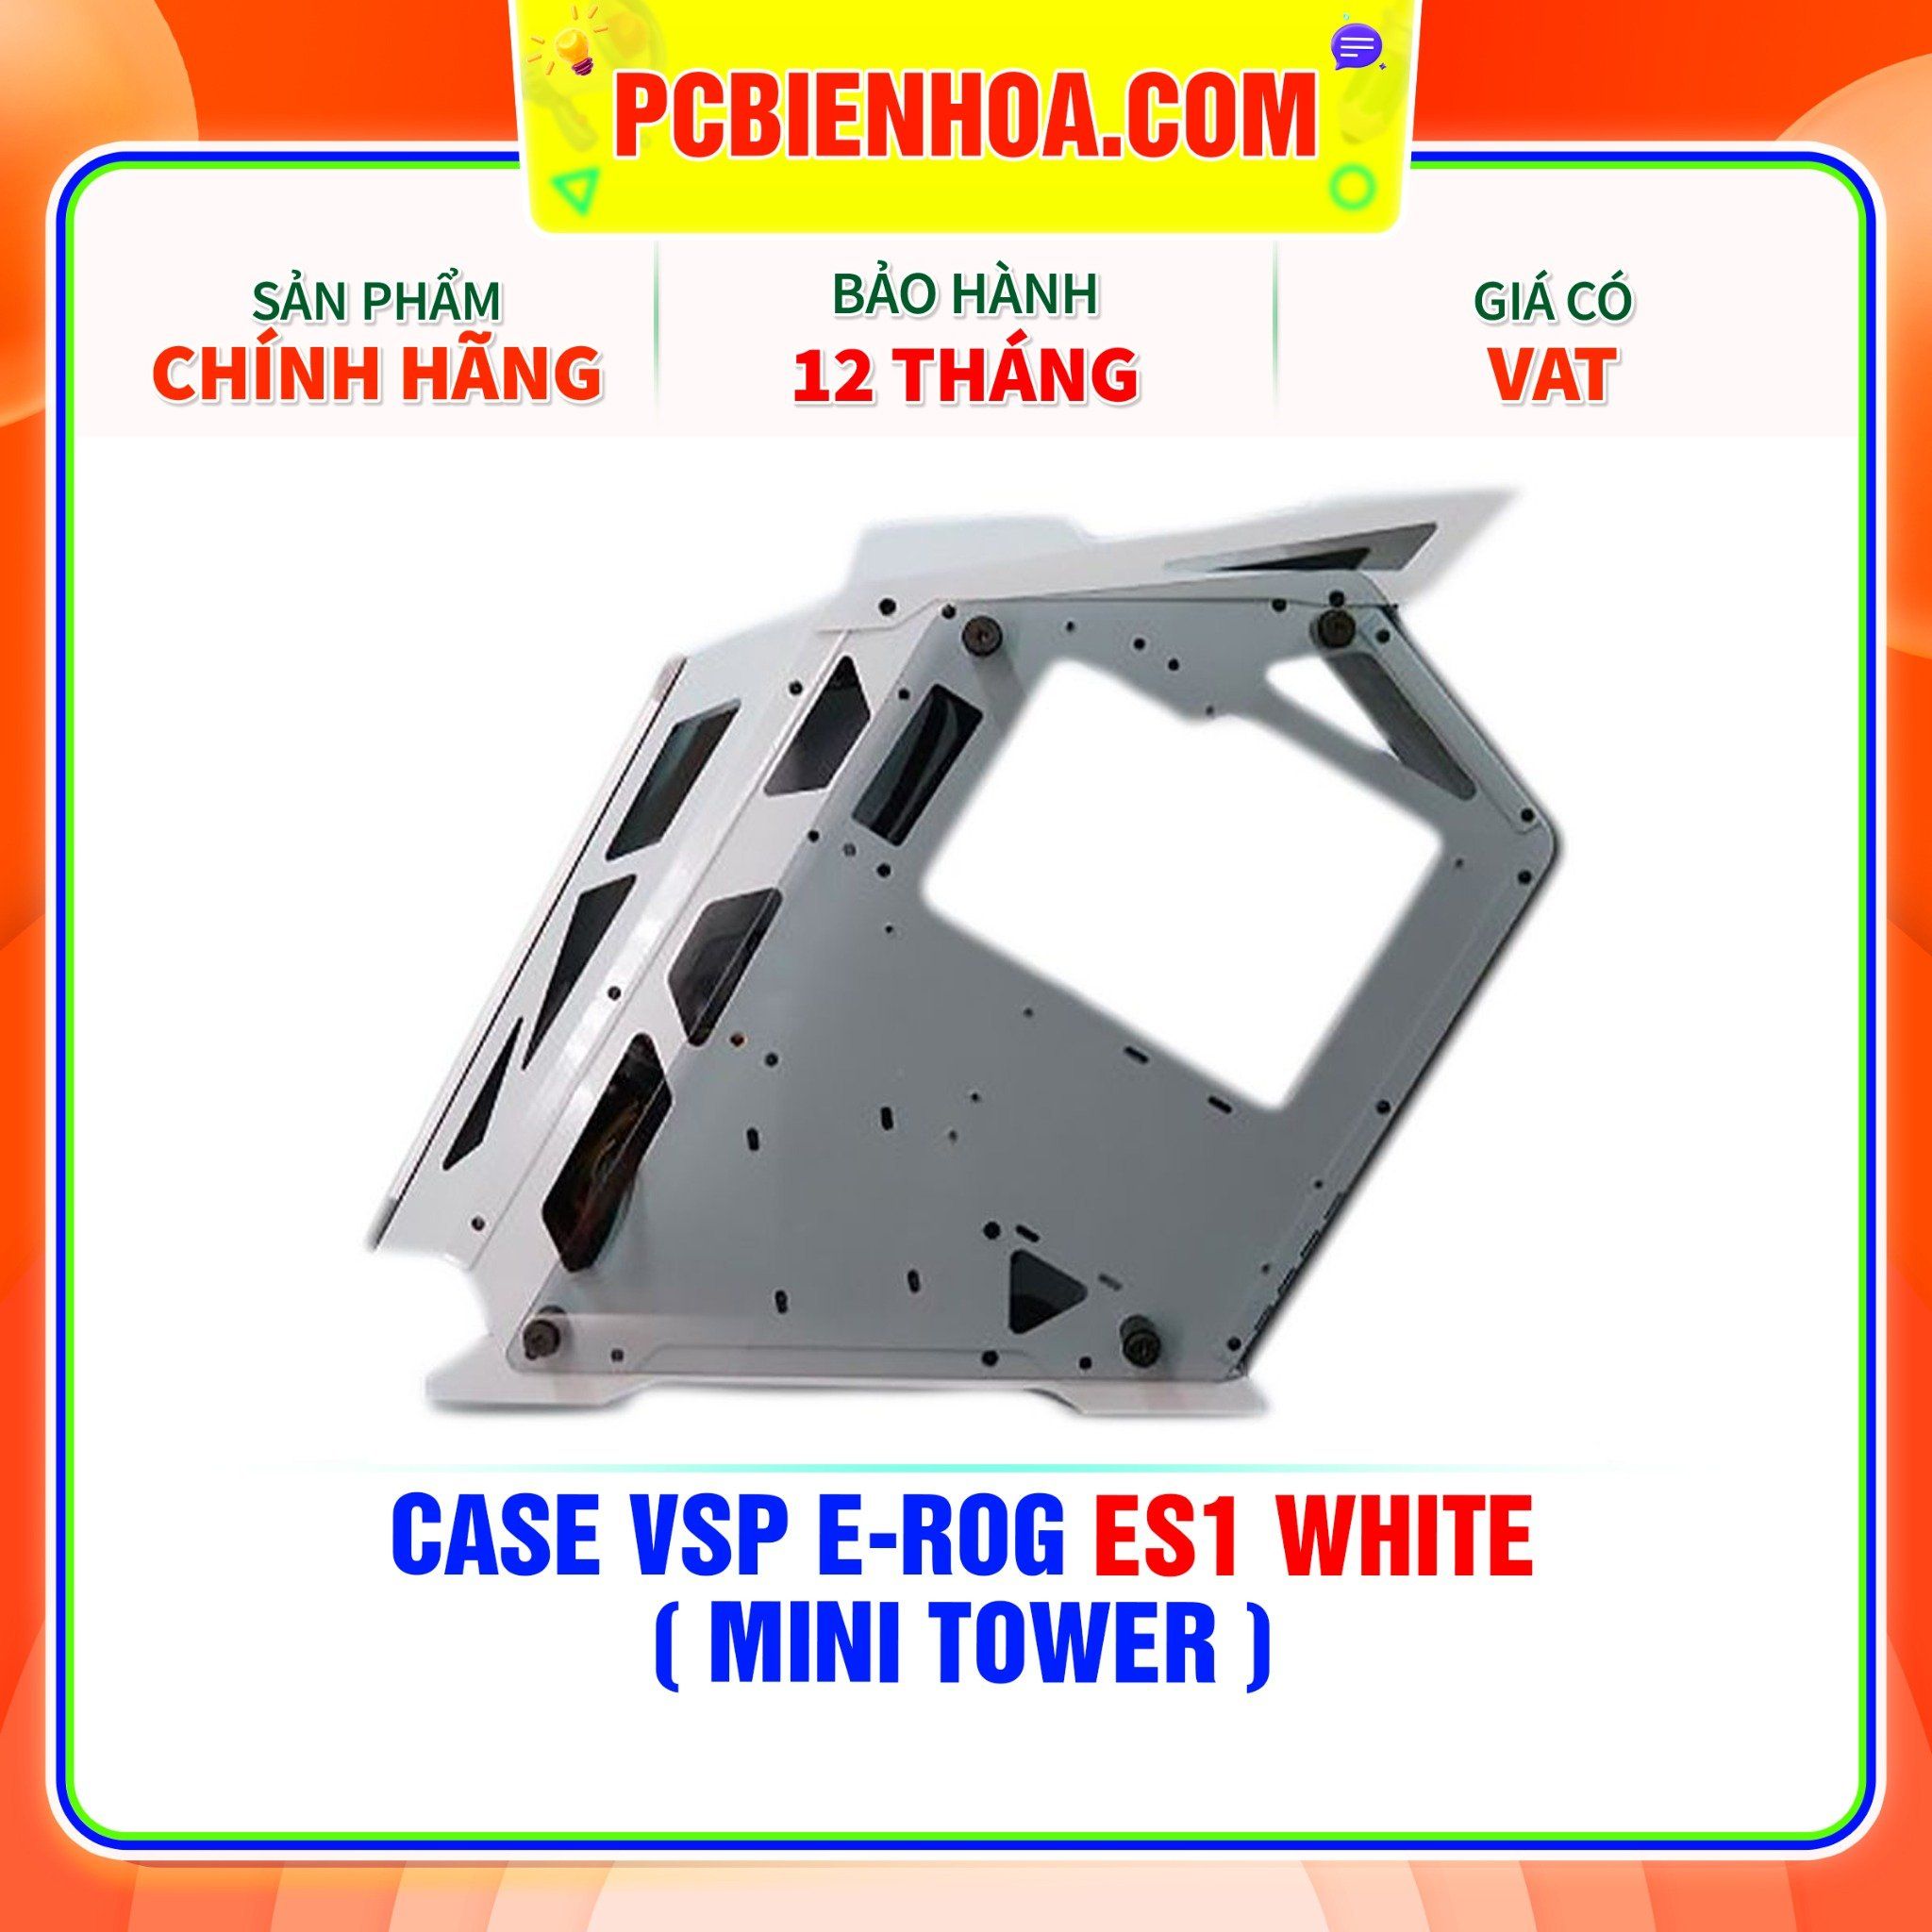  CASE VSP E-ROG ES1 WHITE ( MINI TOWER ) 